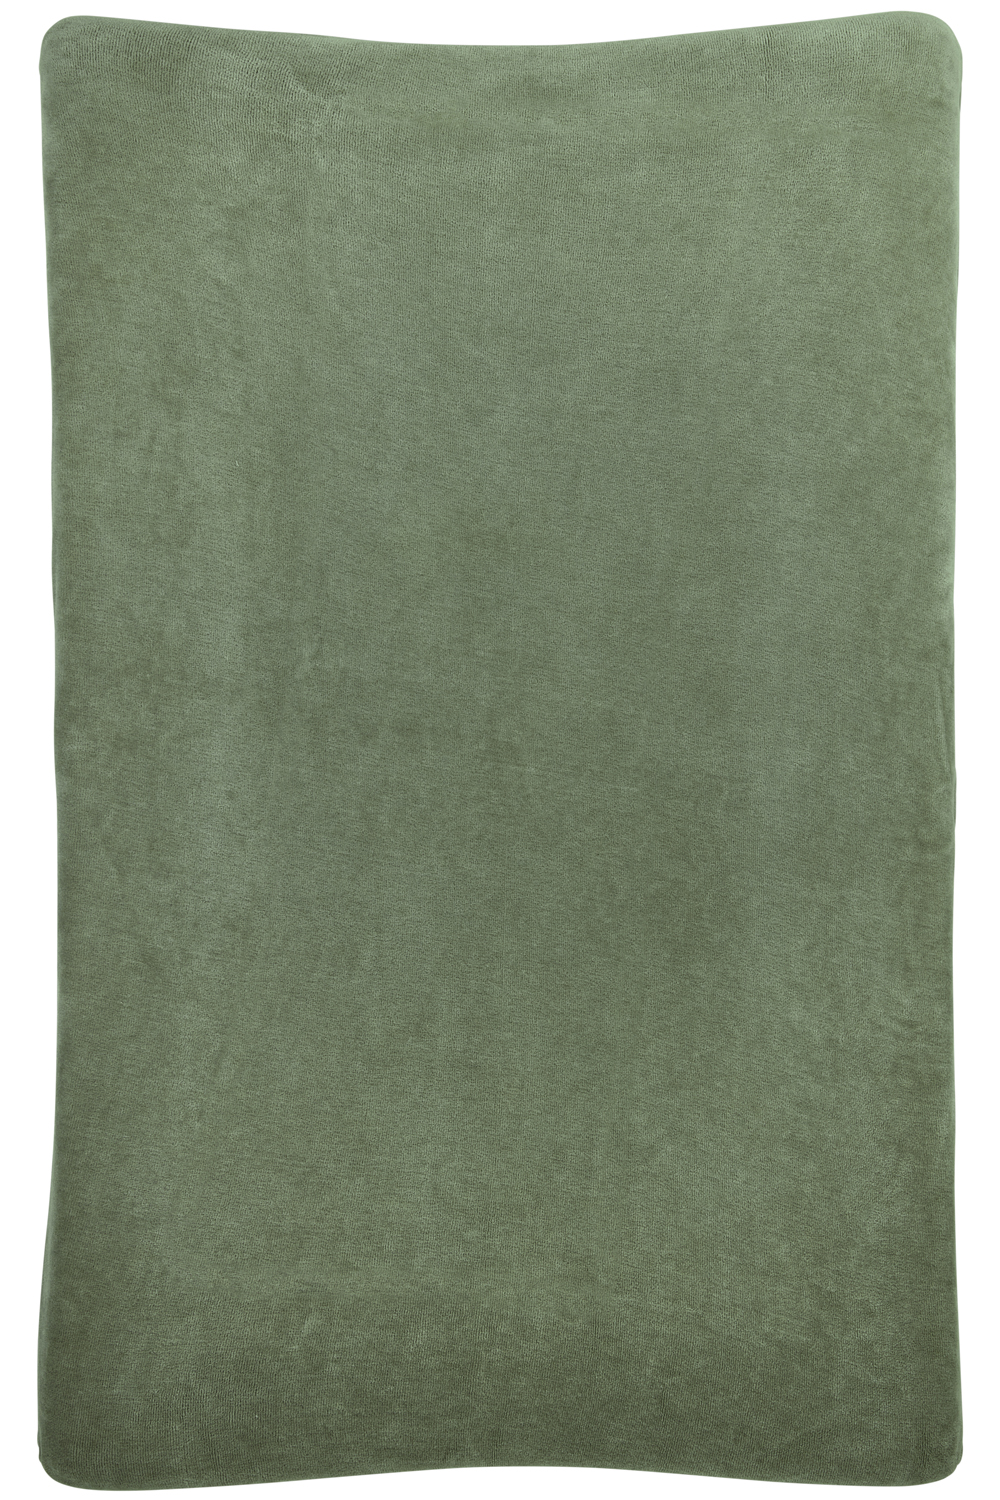 Wickelauflagenbezug Velvet - forest green - 50x70cm